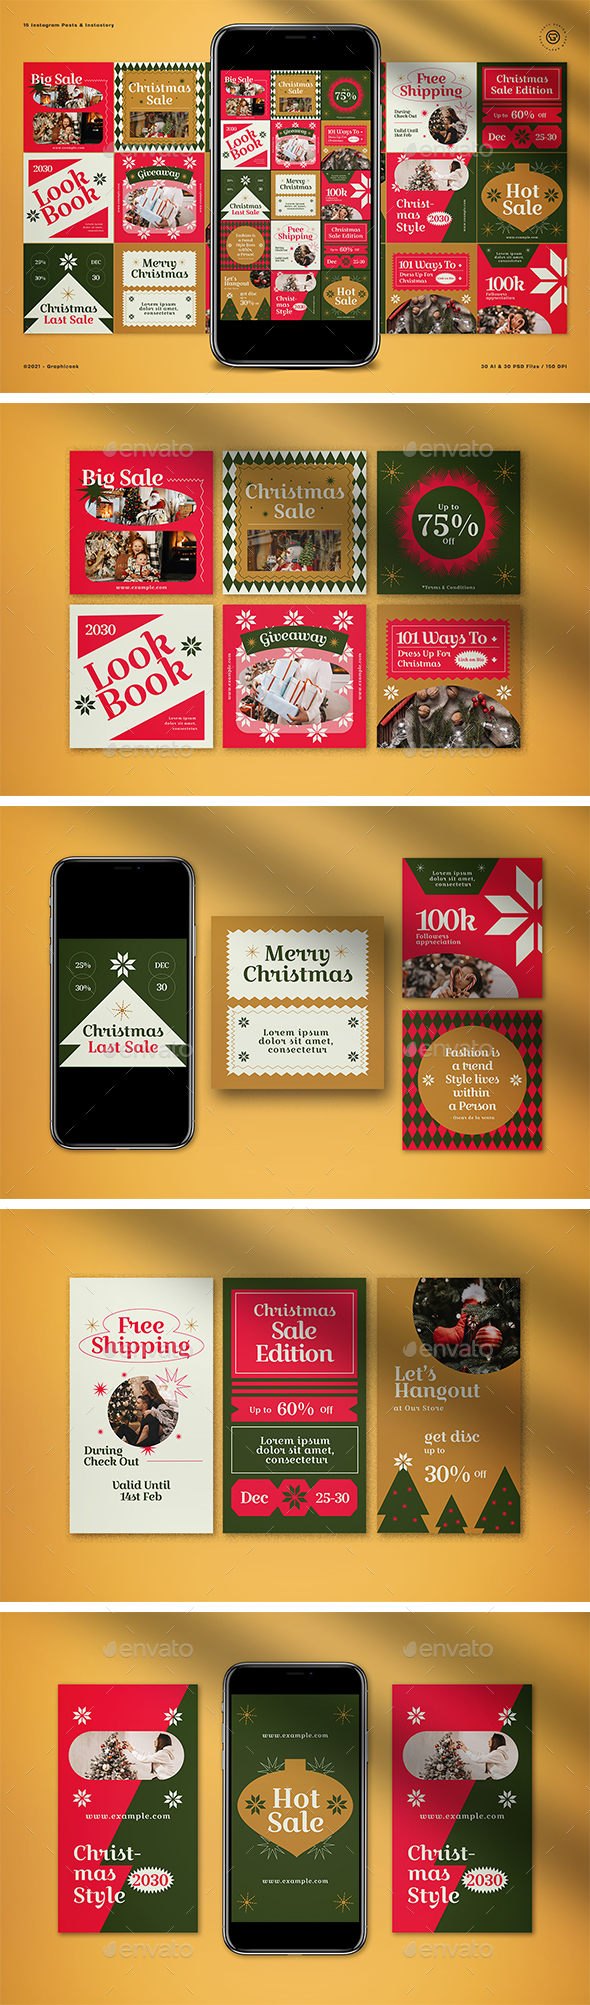 Christmas Sale Instagram Pack